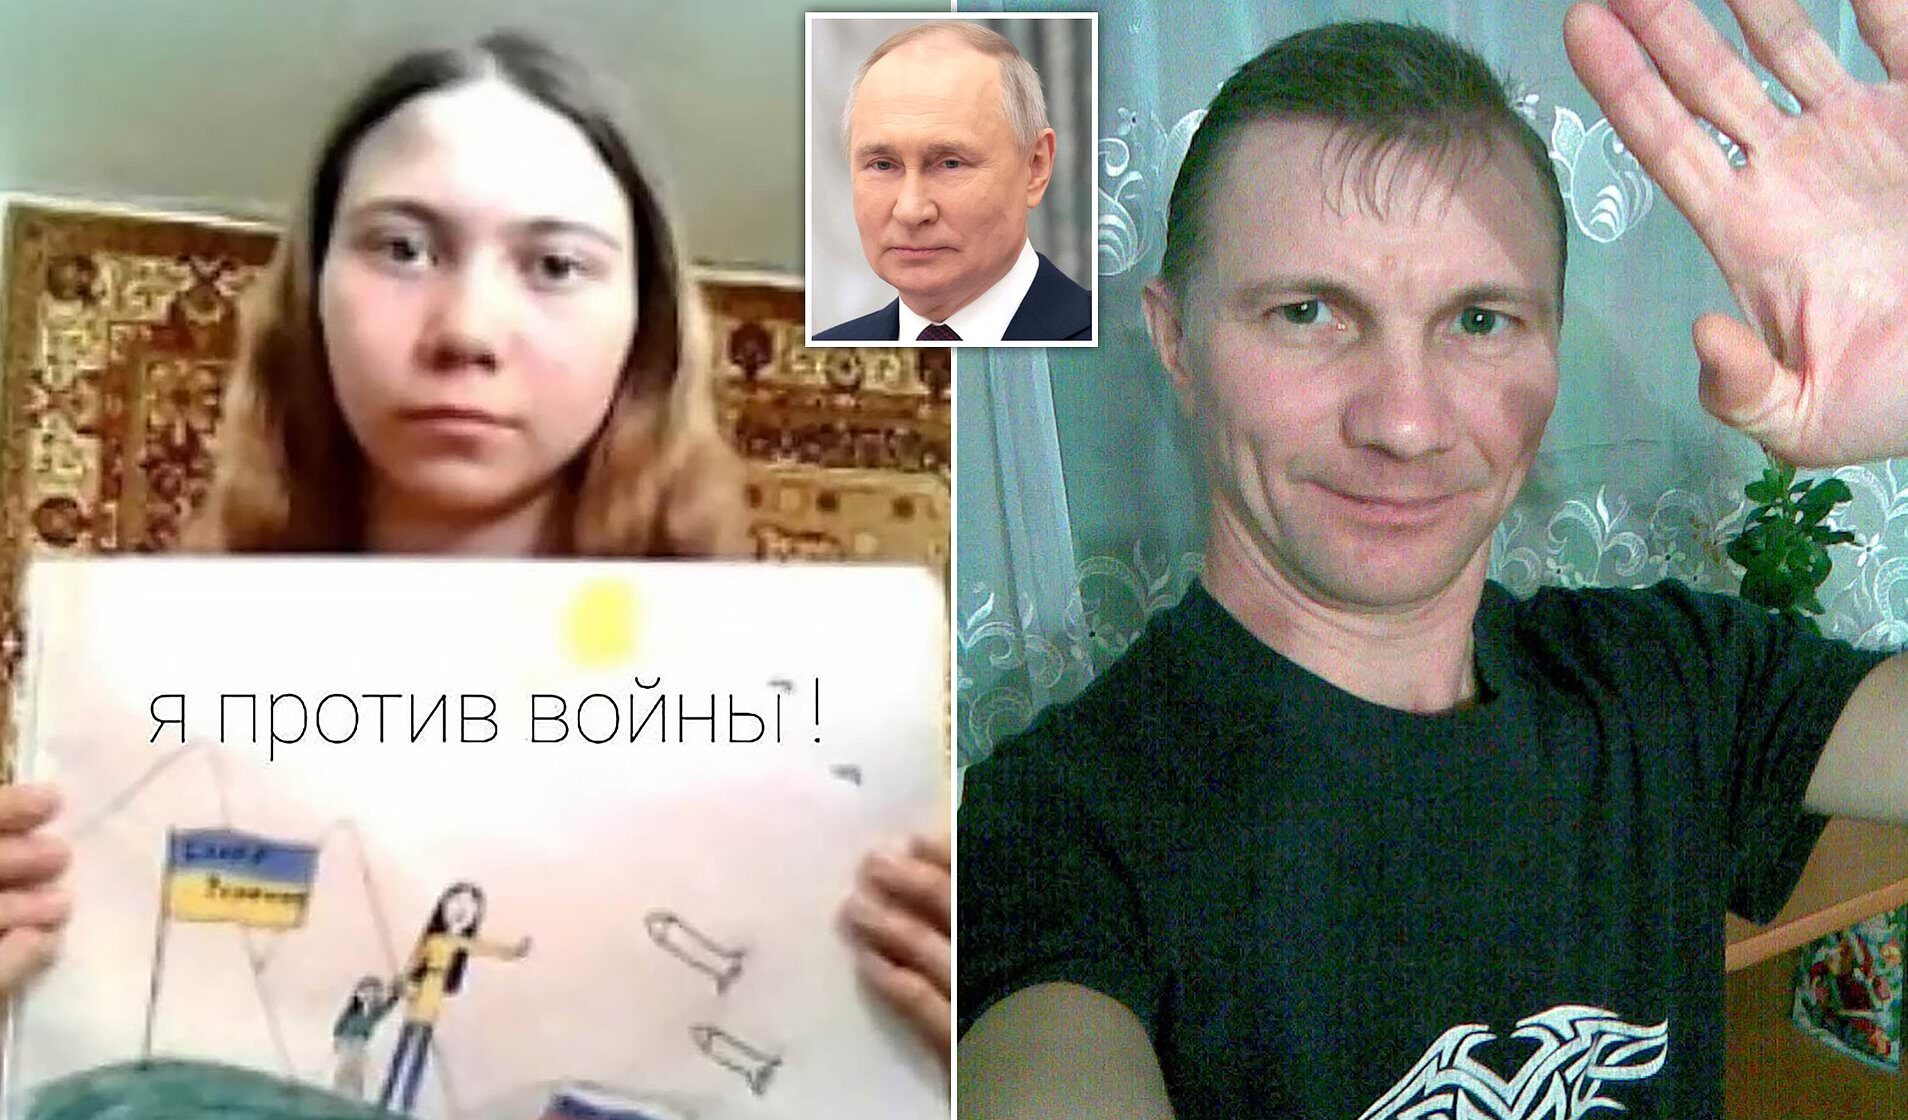 Padre condannato per aver criticato Putin, la lettera della figlia dall'orfanotrofrio: "Sei il mio eroe"